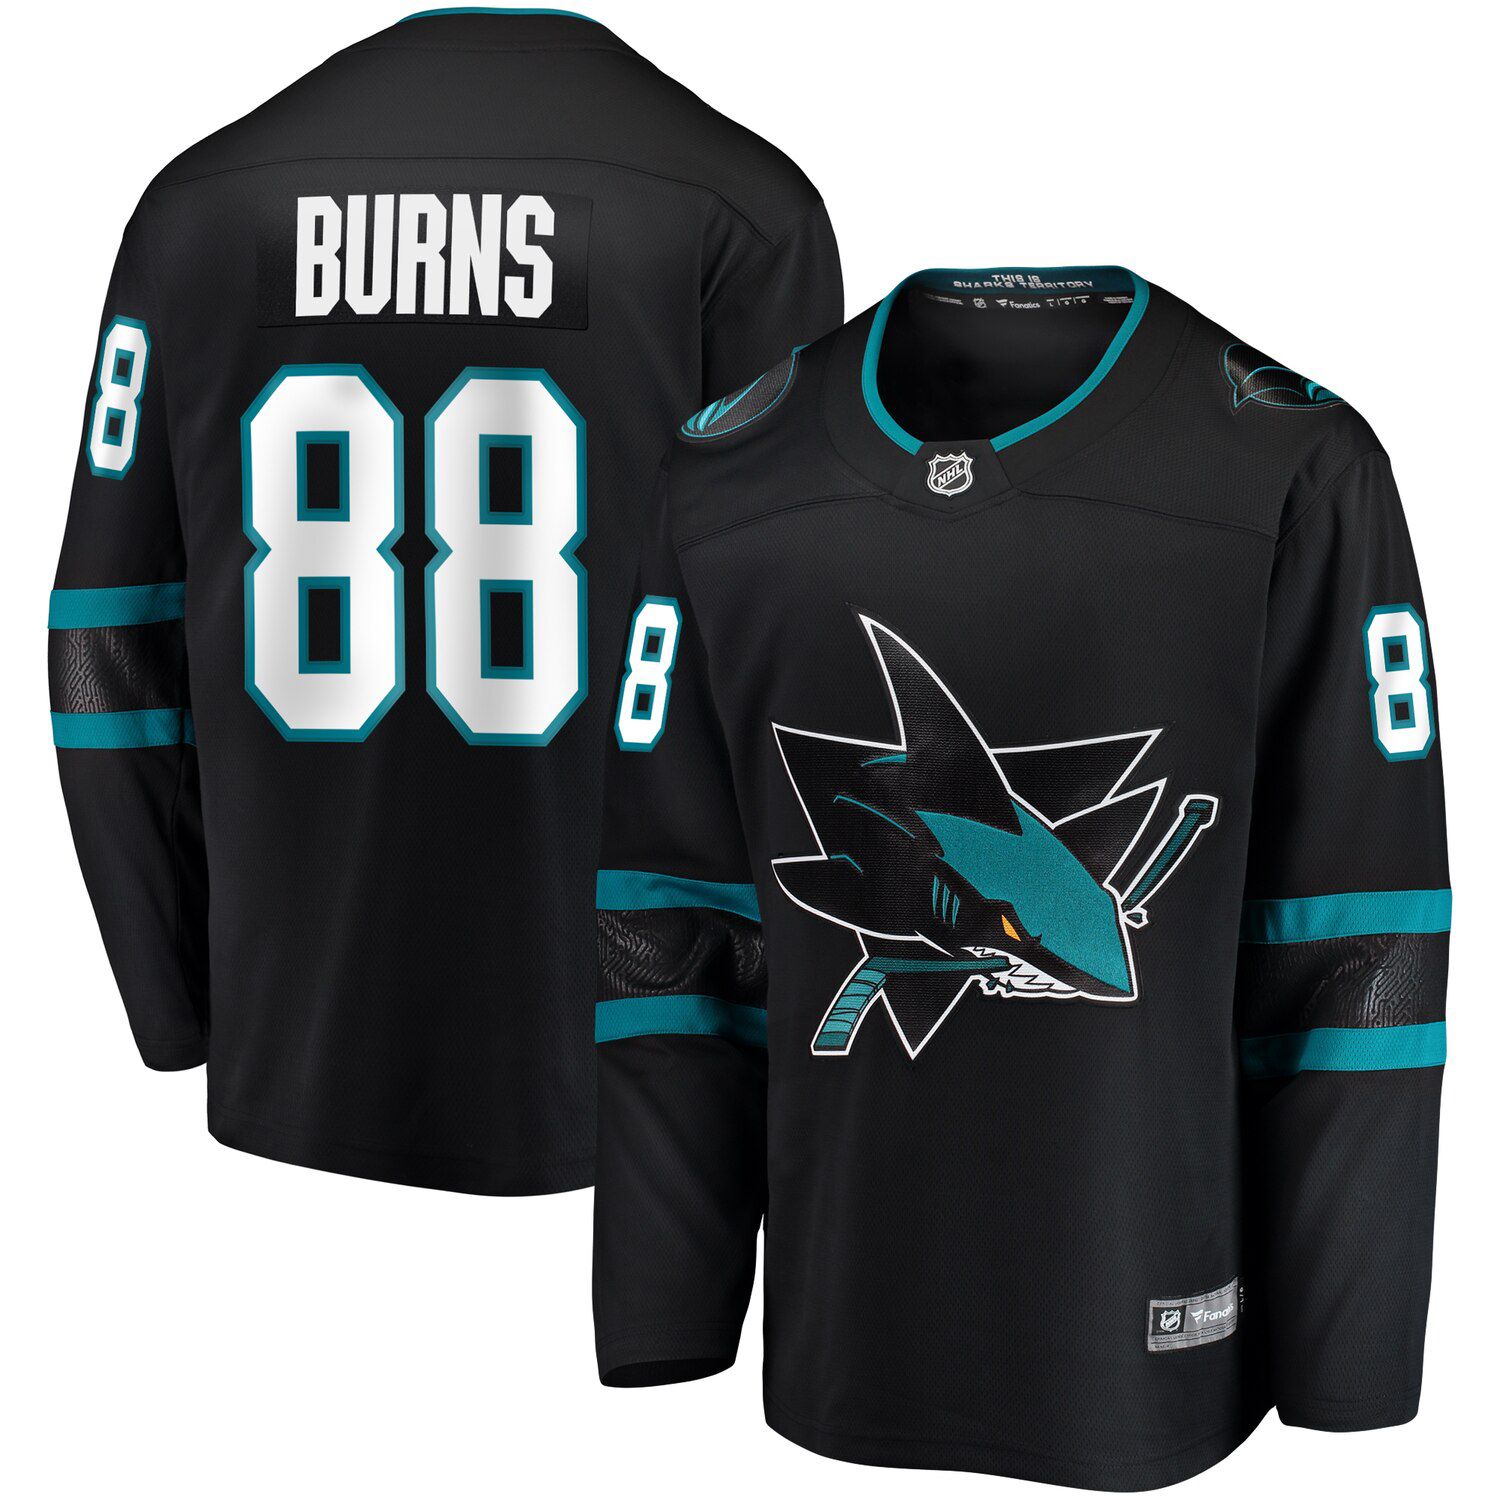 burns sharks jersey